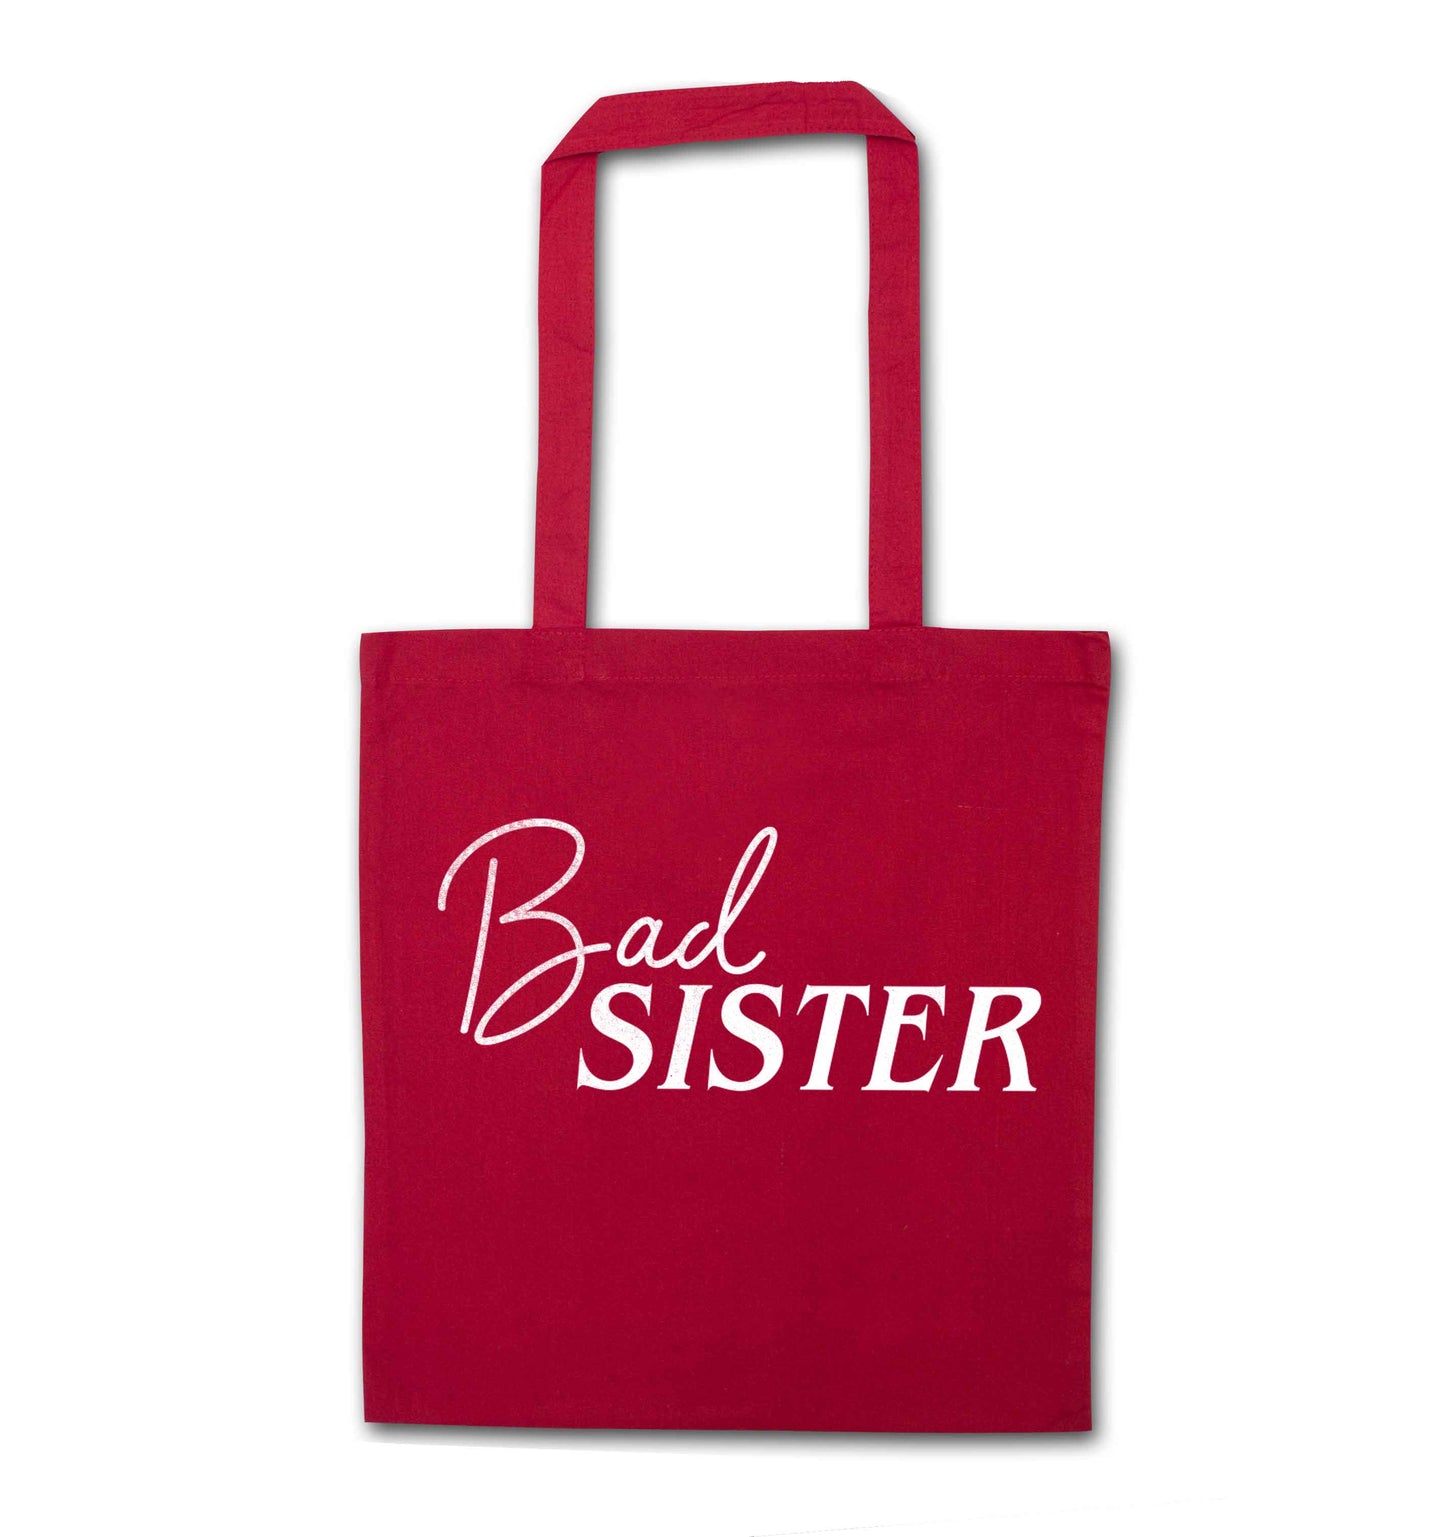 Bad sister red tote bag